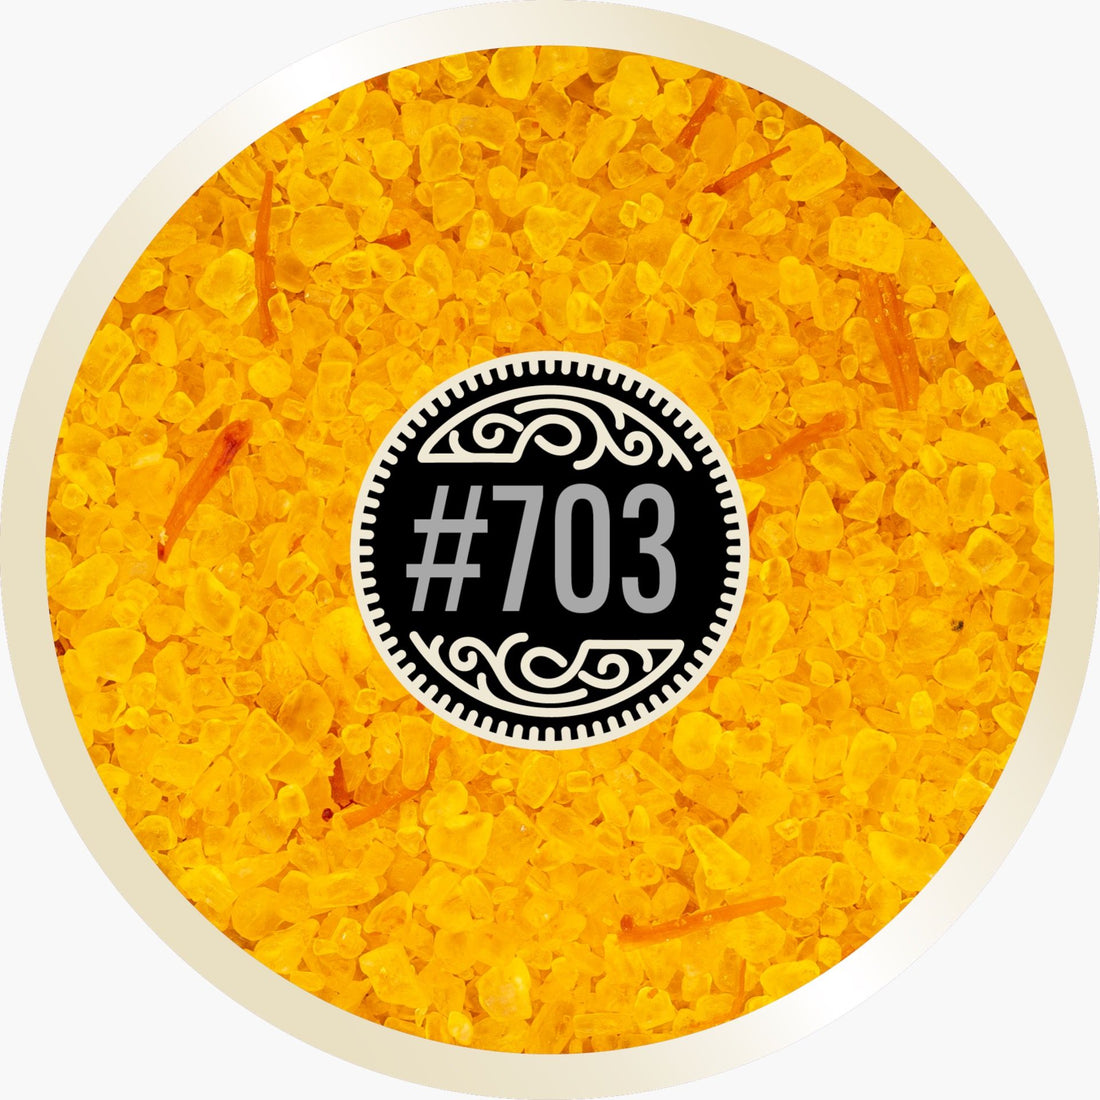 Saffron Salt # 703